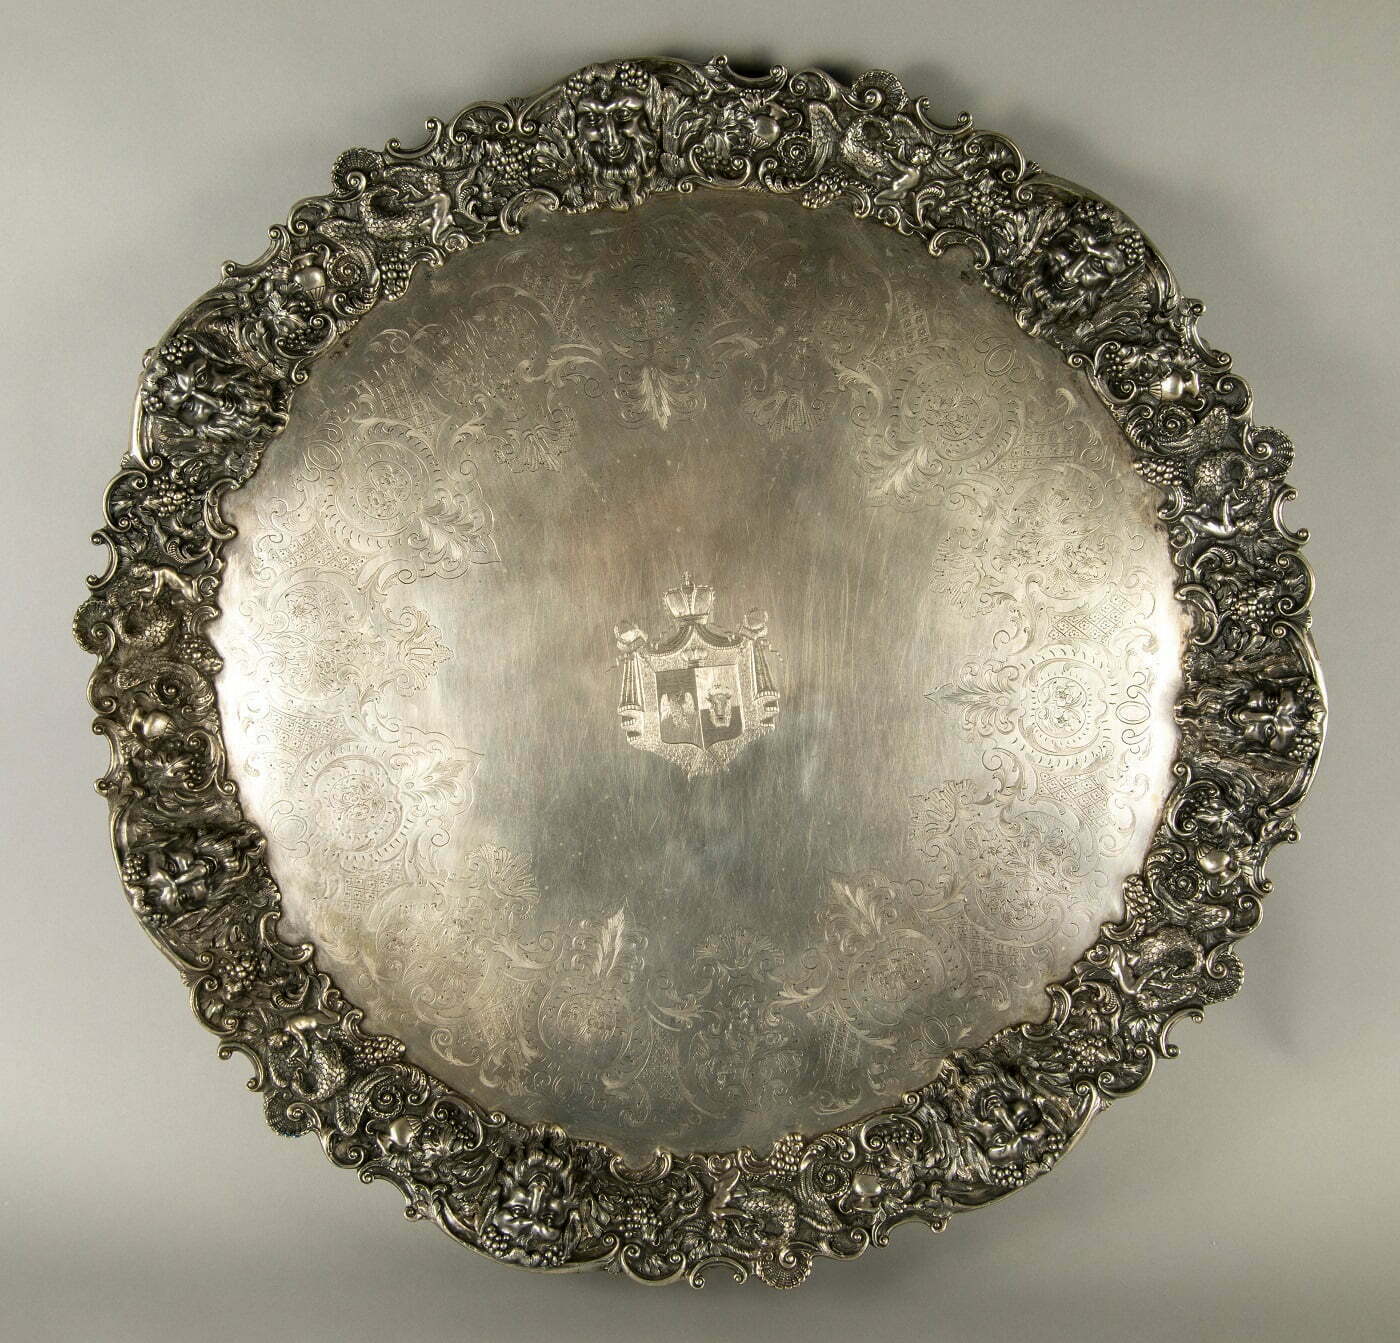 Platou de argint, circular, cizelat cu arabescuri,având în centru stema Principatelor Unite, care i-a aparținut domnitorului Alexandru Ioan Cuza